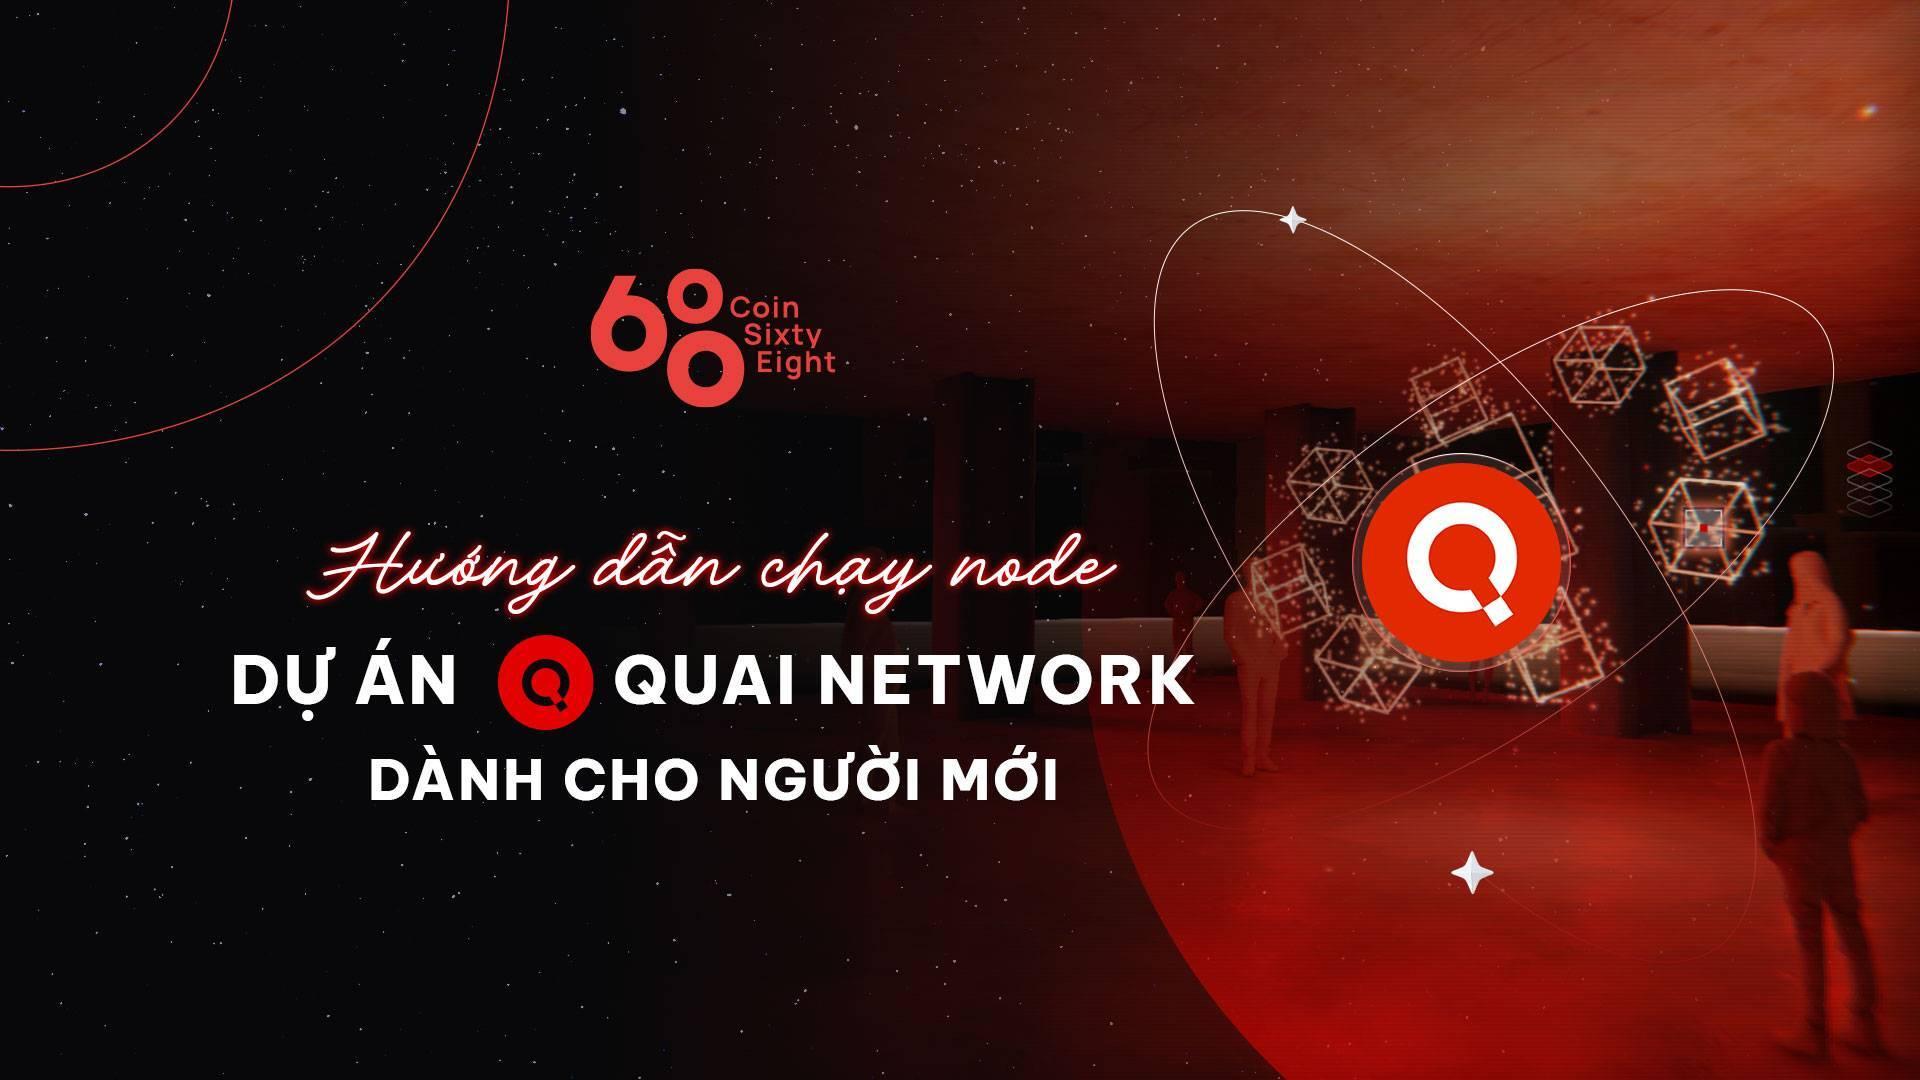 huong-dan-chay-node-du-an-quai-network-danh-cho-nguoi-moi